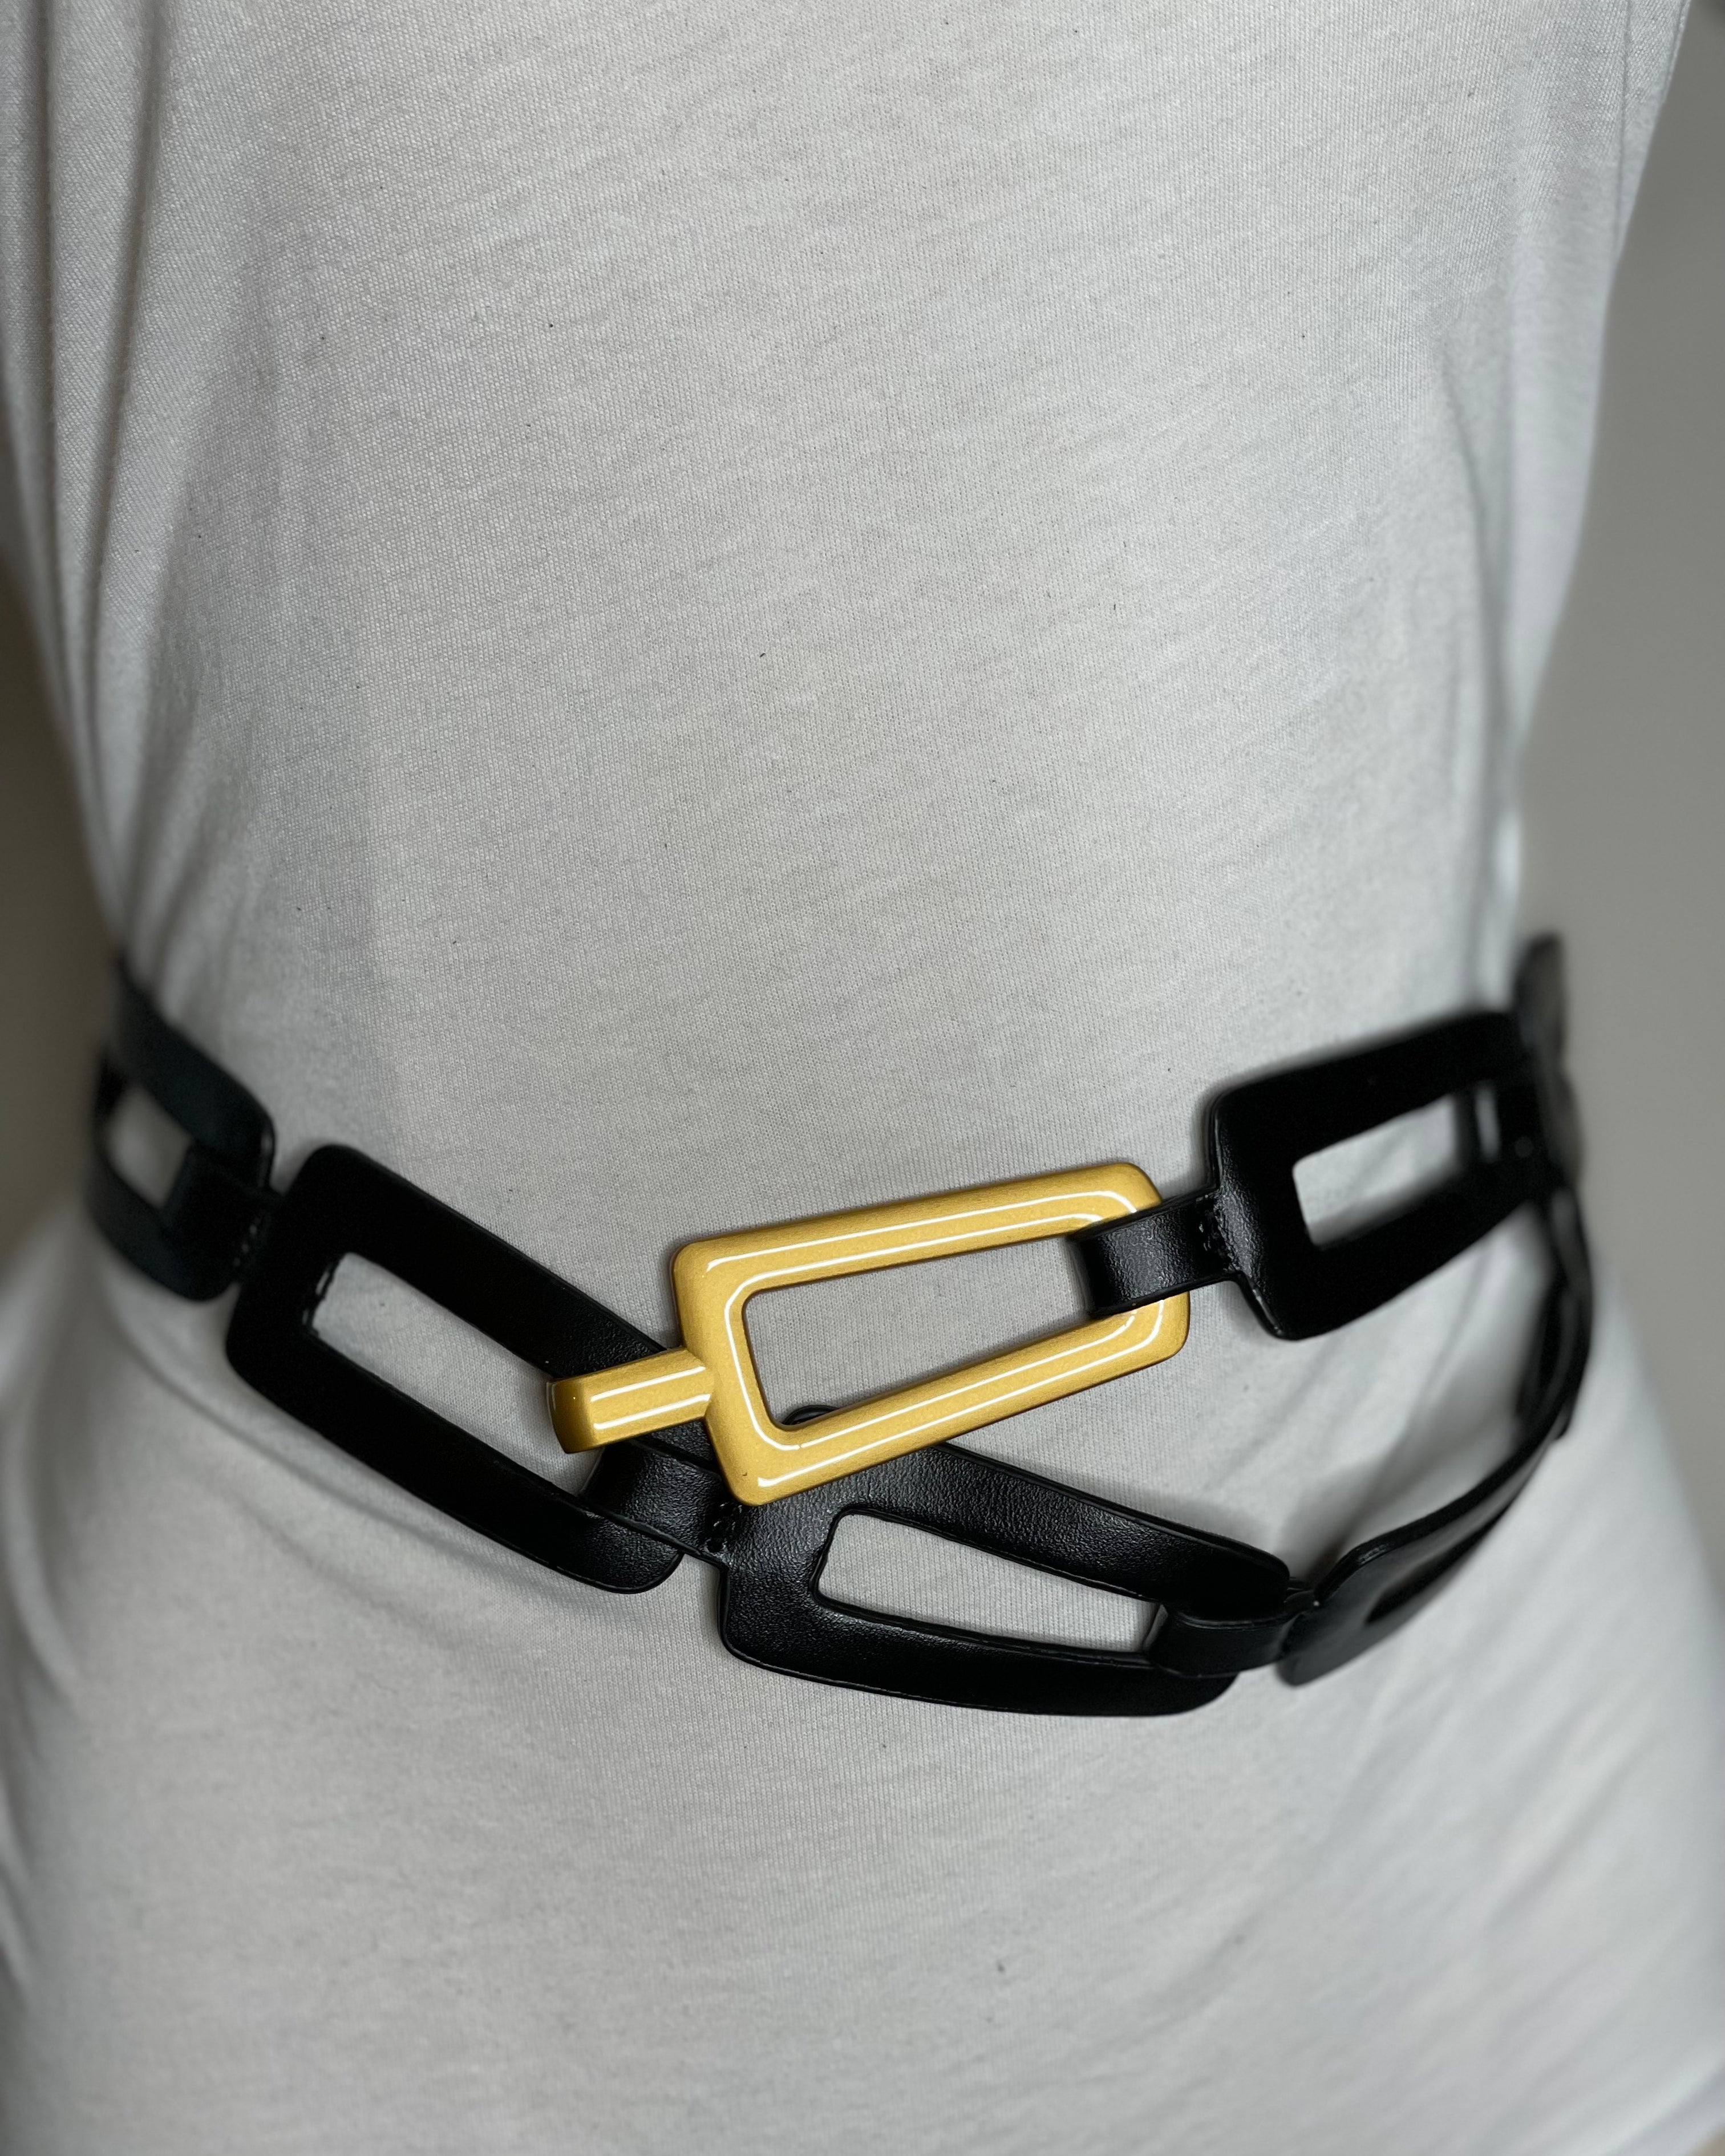 Leather Link Belt in Black.